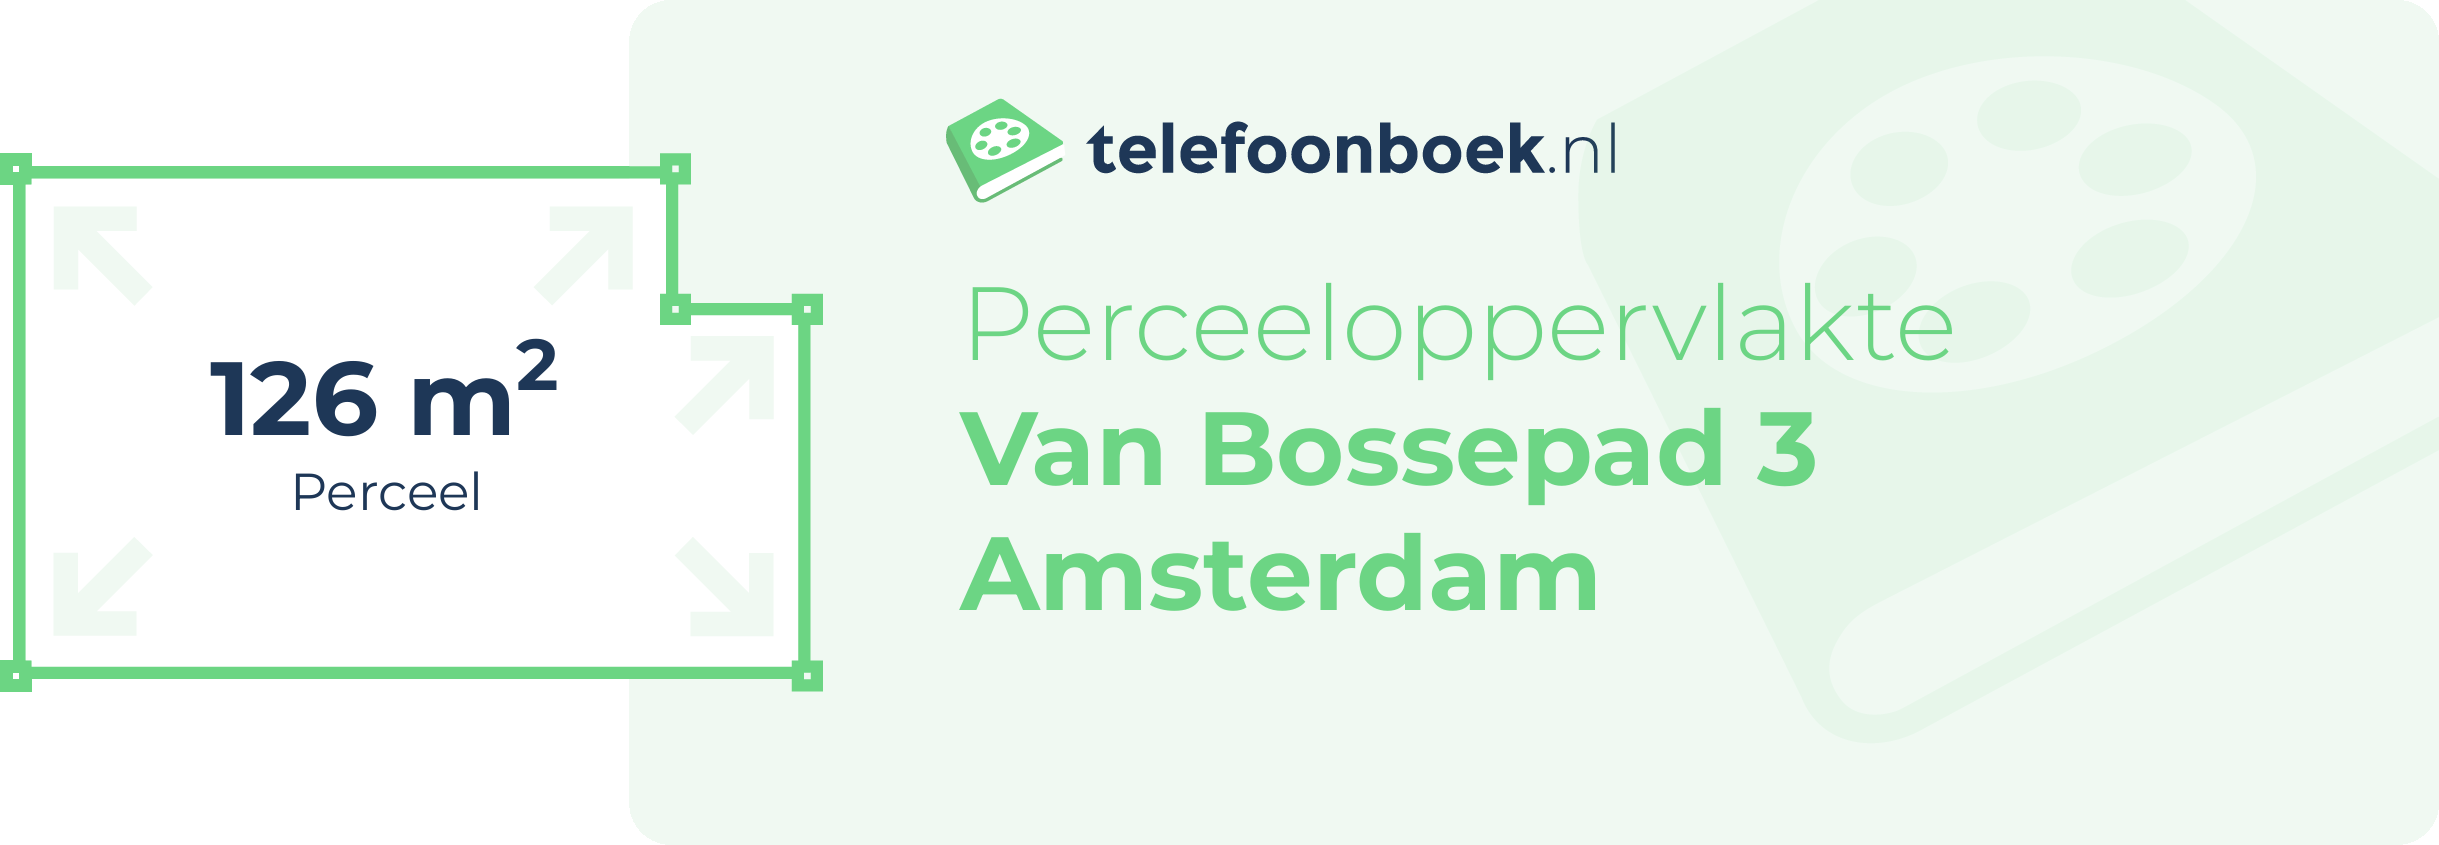 Perceeloppervlakte Van Bossepad 3 Amsterdam